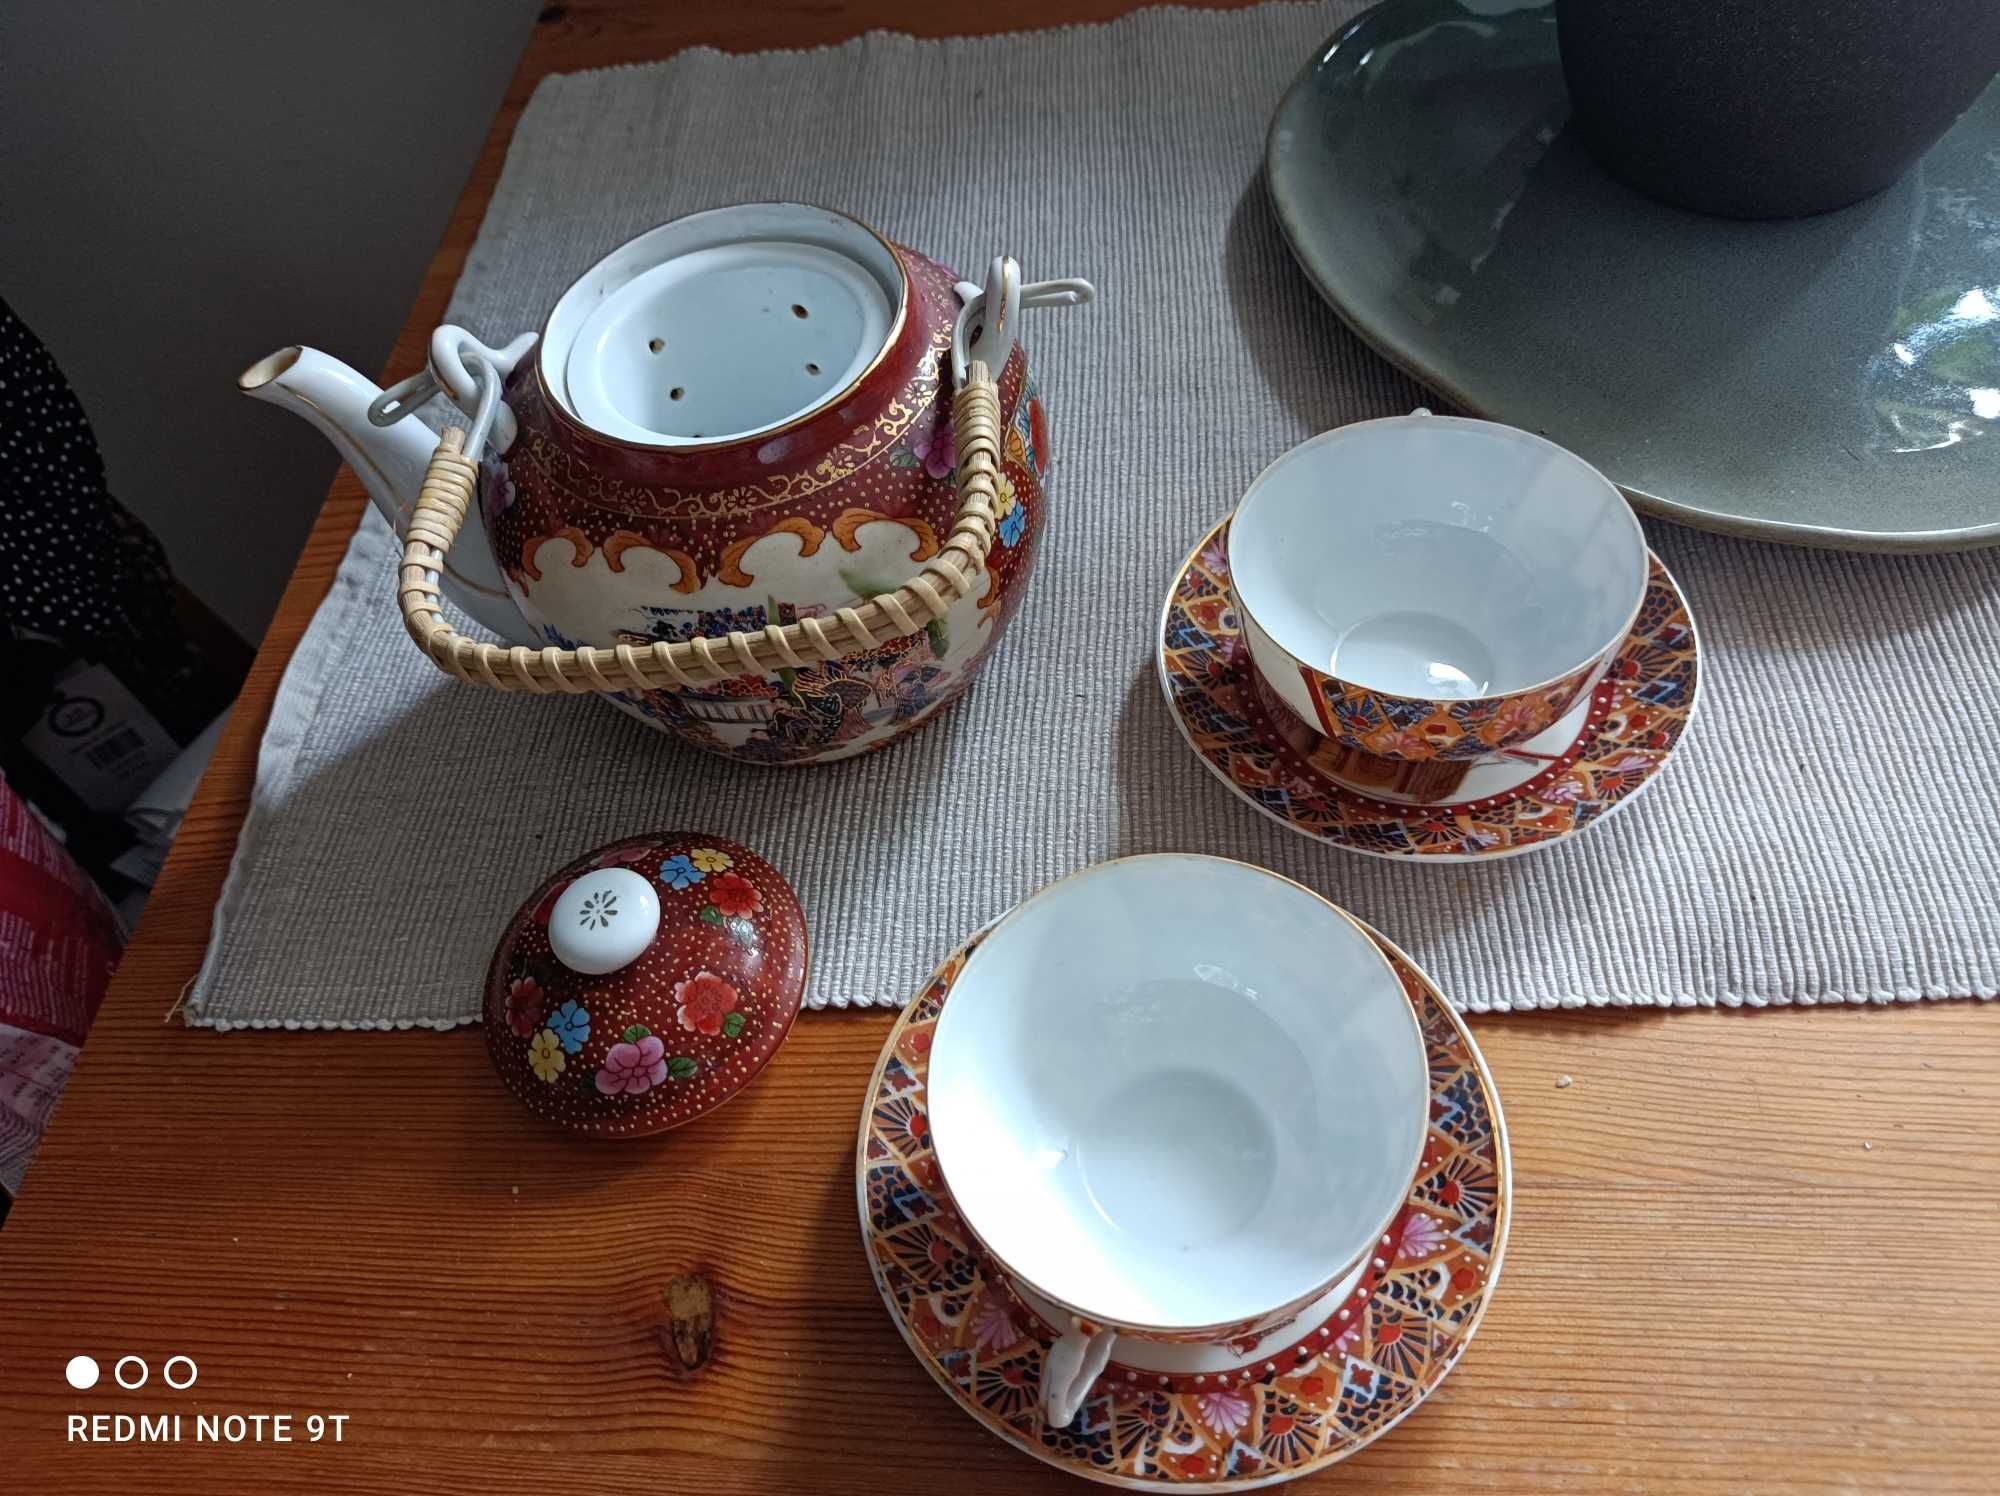 Zestaw chińskiej porcelany,czajnik plus dwie filiżanki i podstawki